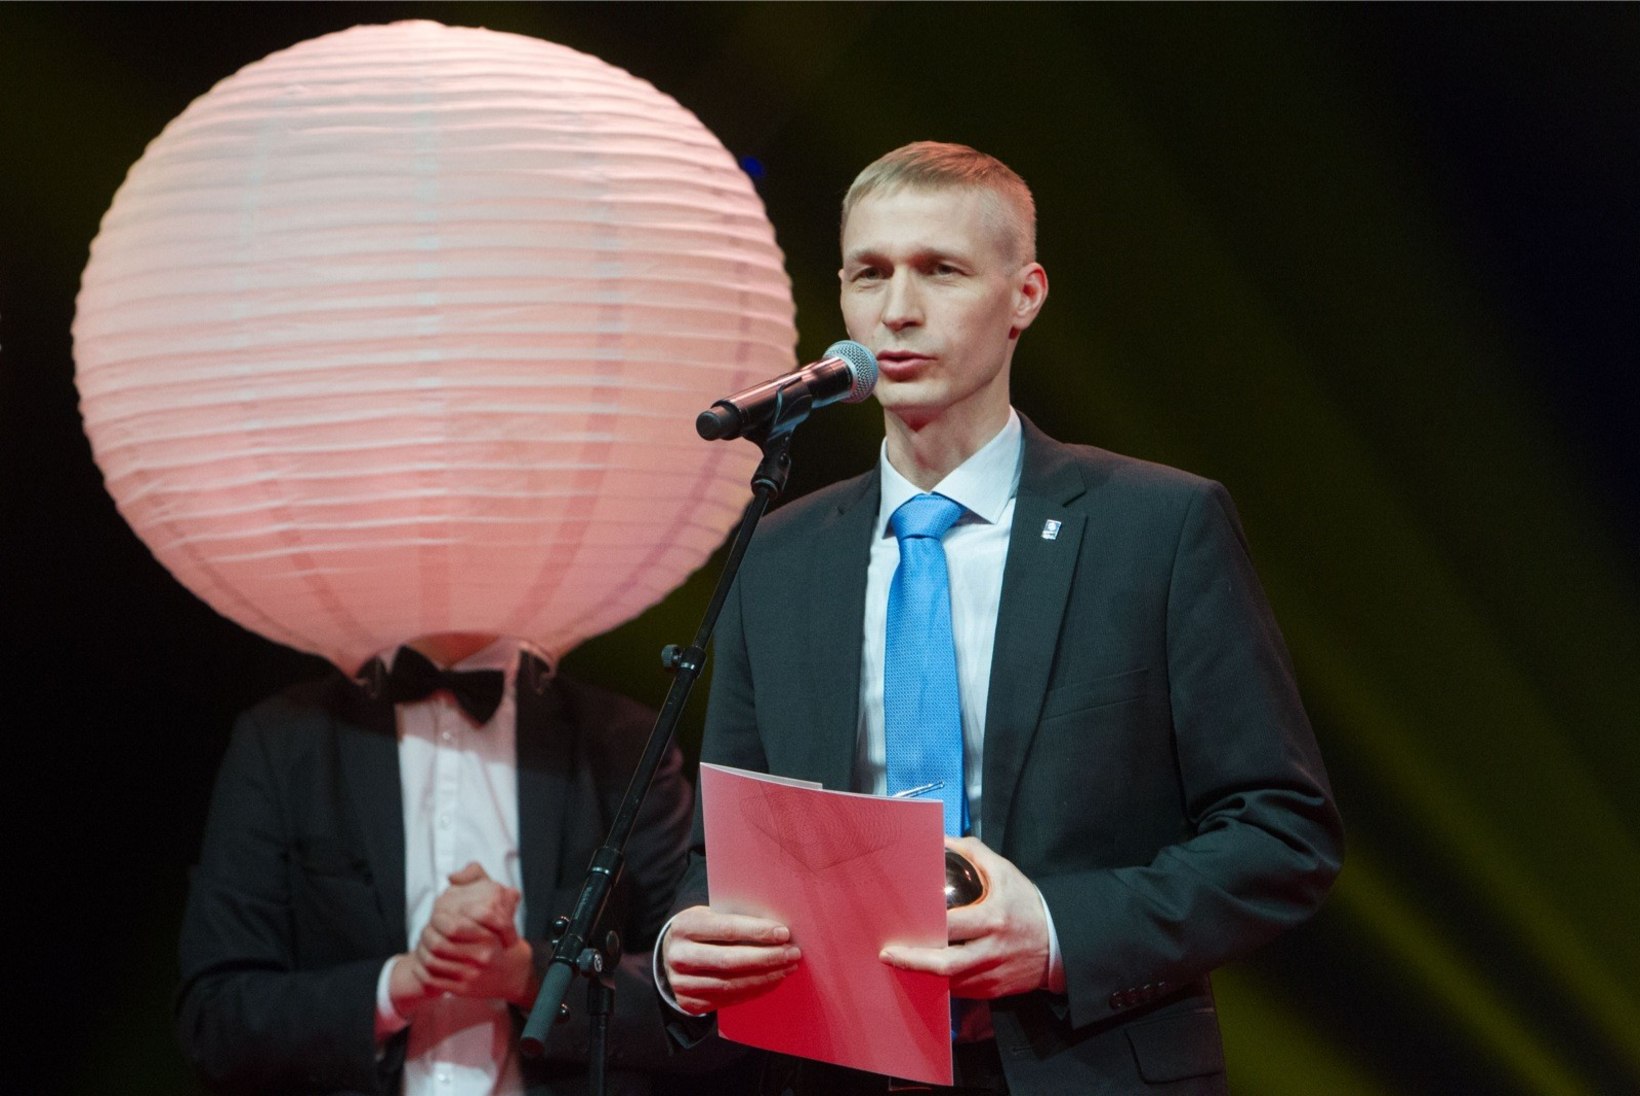 Kultuuriminister Lukas alaliidu ja Rally Estonia tülist: kana arvab, et on tähtsam kui muna